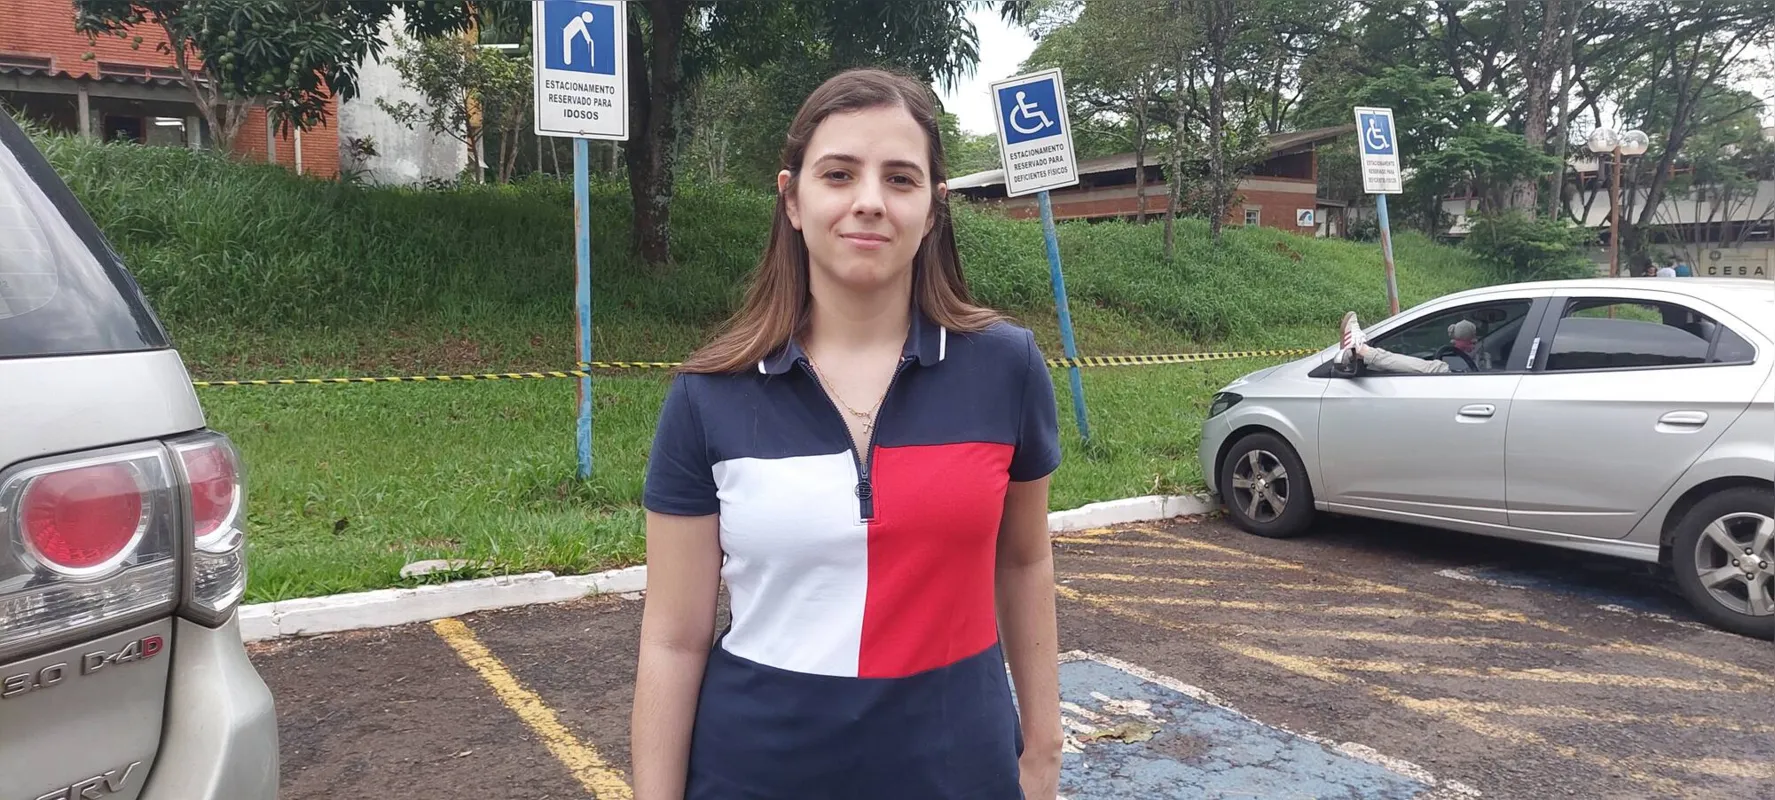 Marina Barbalho é engenheira civil, mas sonha em cursar Medicina